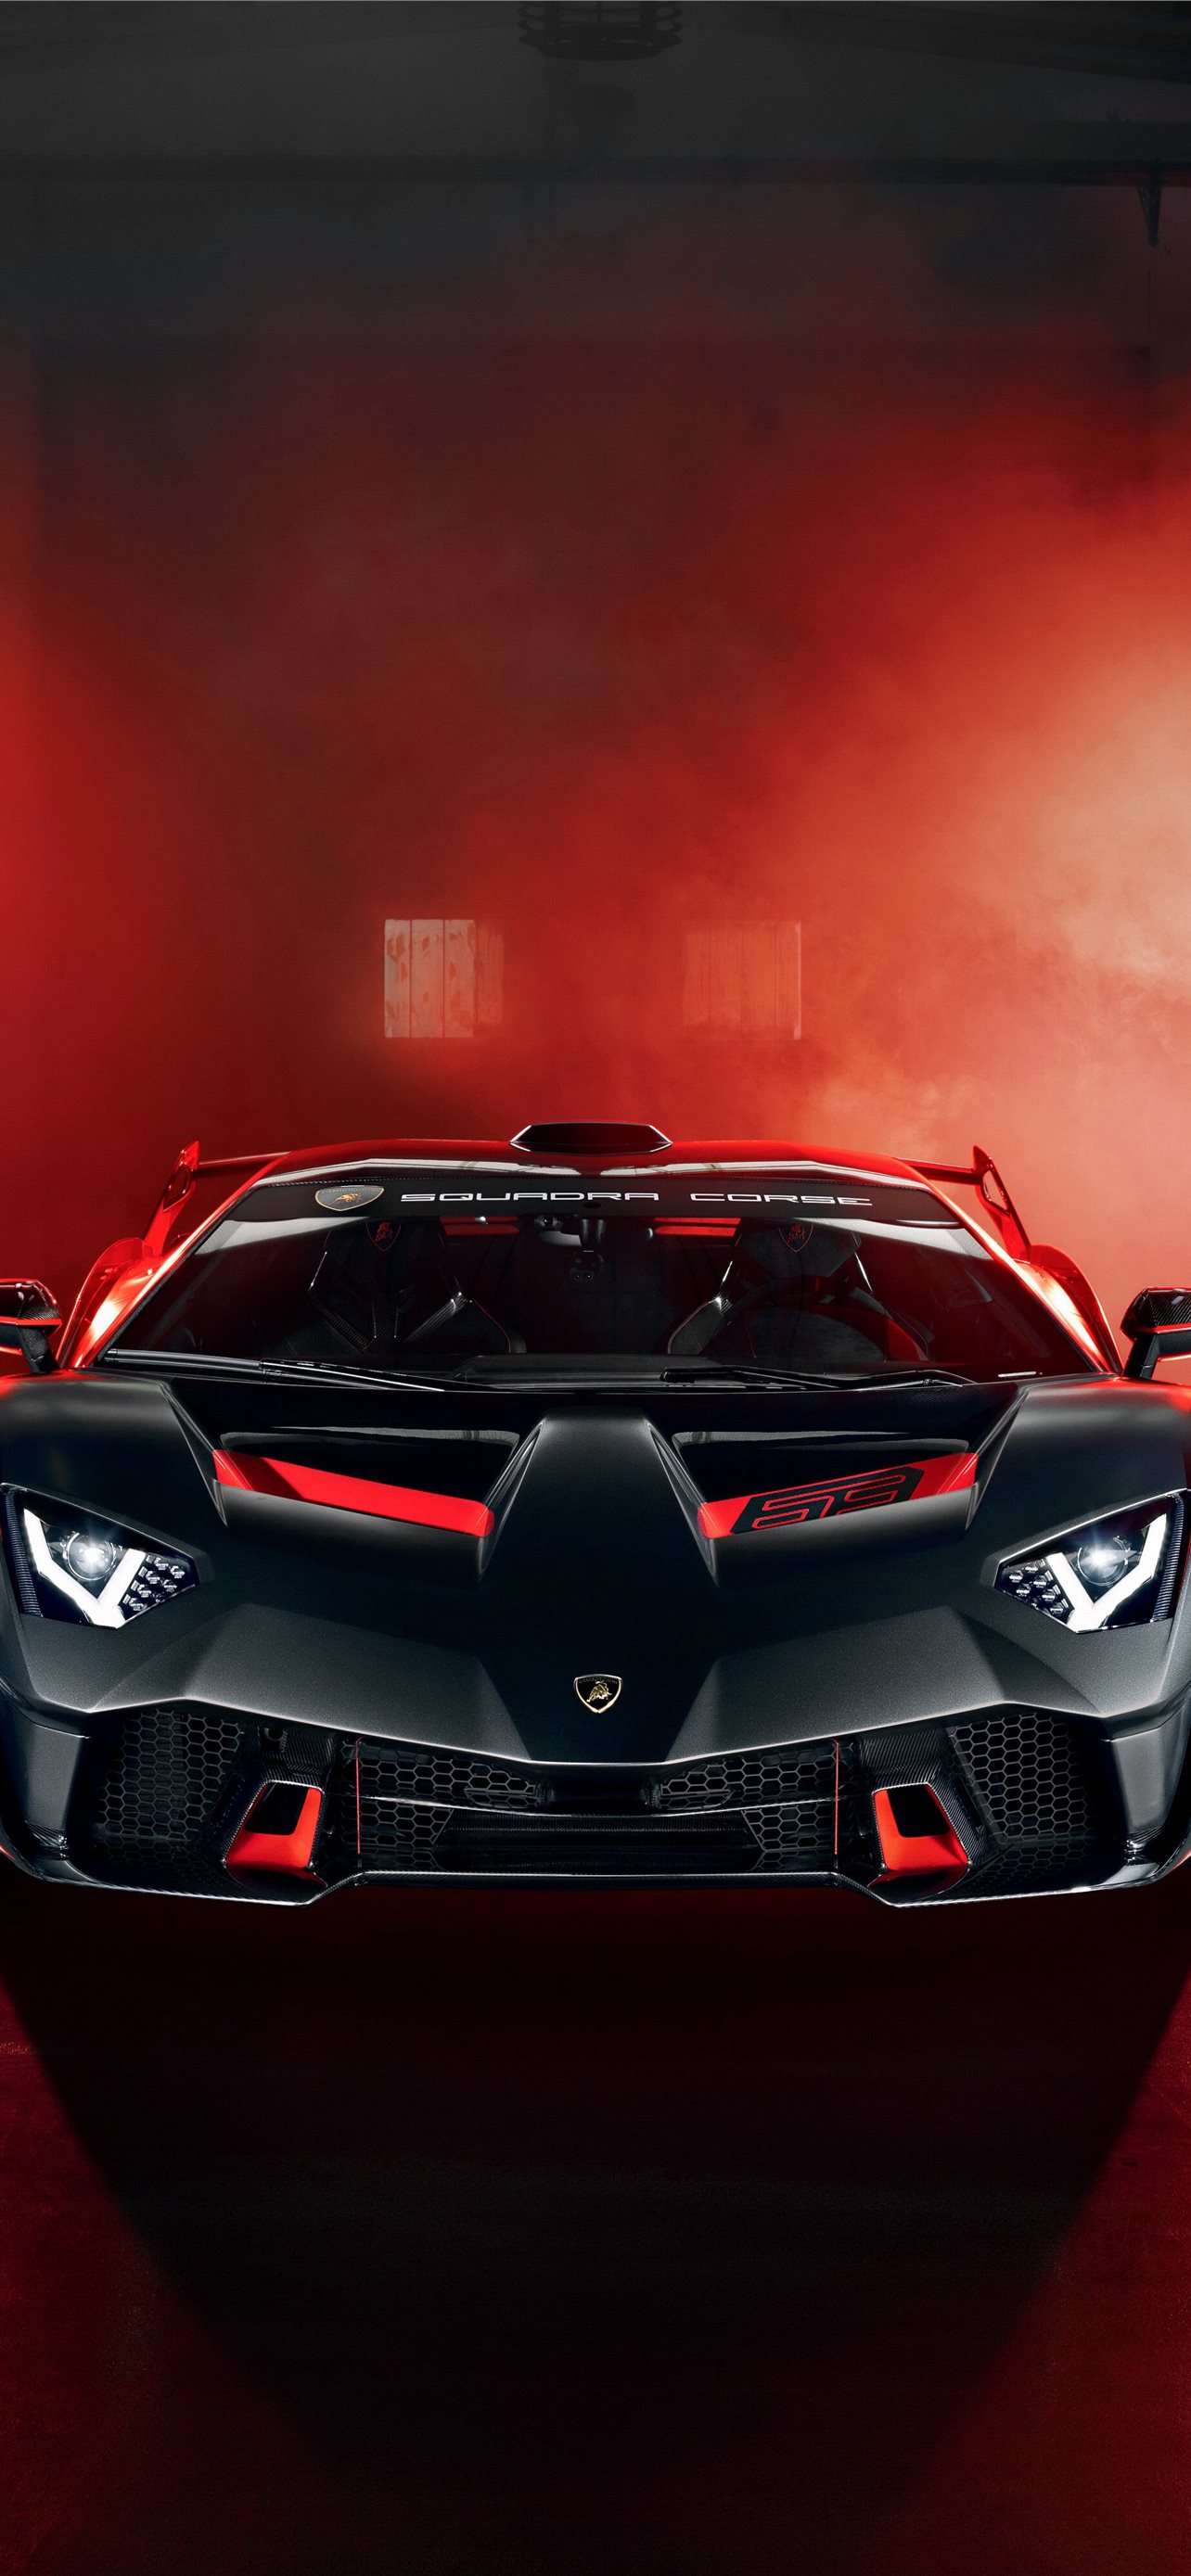 Lamborghini hình nền: Khám phá thiết kế cực kỳ ấn tượng với hình nền Lamborghini. Dành cho những ai yêu thích tốc độ và đam mê xe hơi, hình nền này sẽ khiến bạn đắm chìm trong trải nghiệm thế giới siêu xe đỉnh cao. Đừng bỏ lỡ cơ hội độc đáo này để làm mới không gian máy tính của bạn.